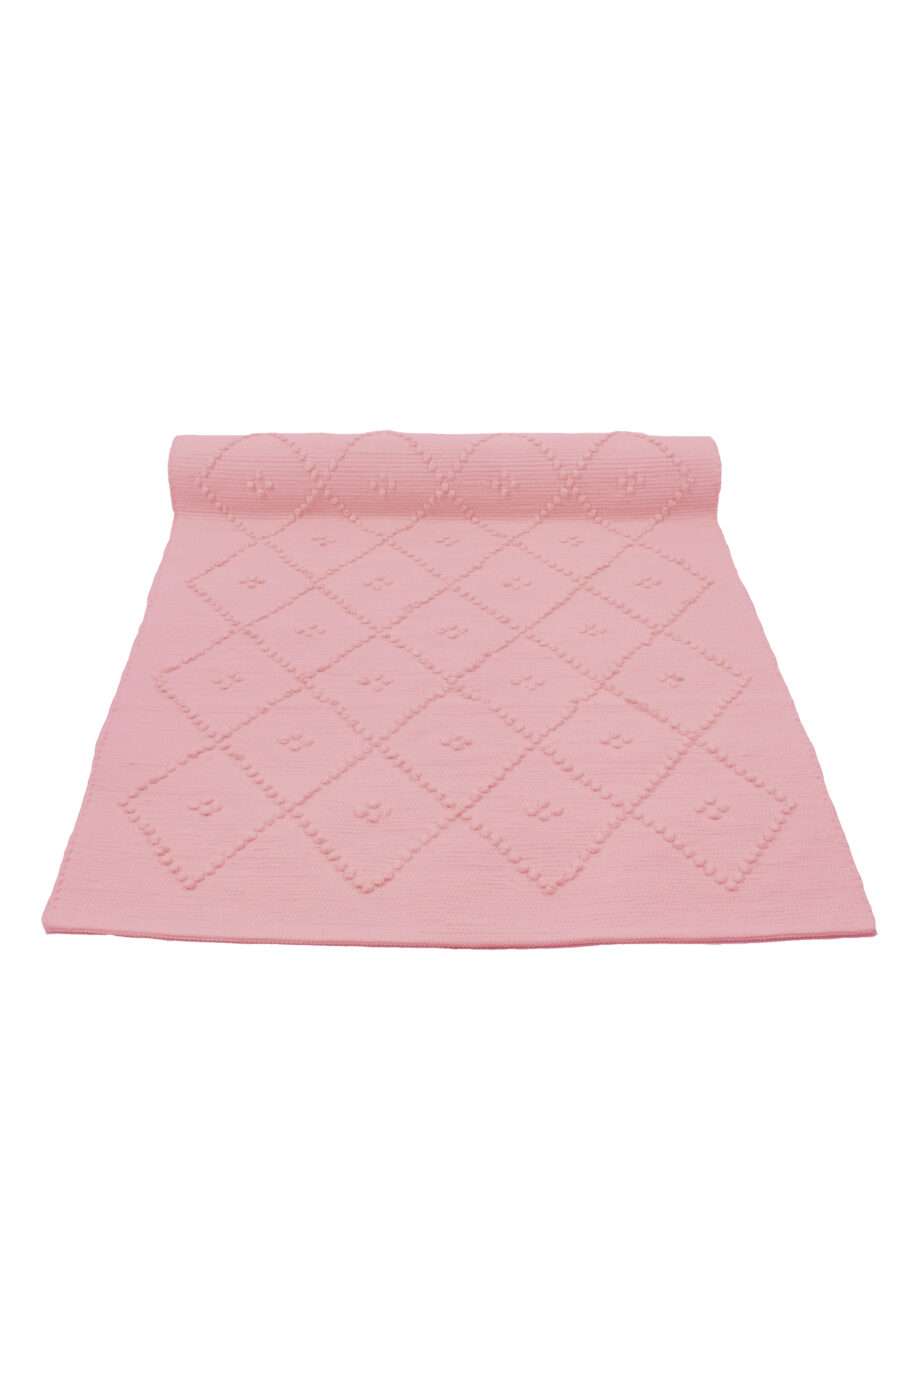 diamond fluor pink woven cotton rug medium